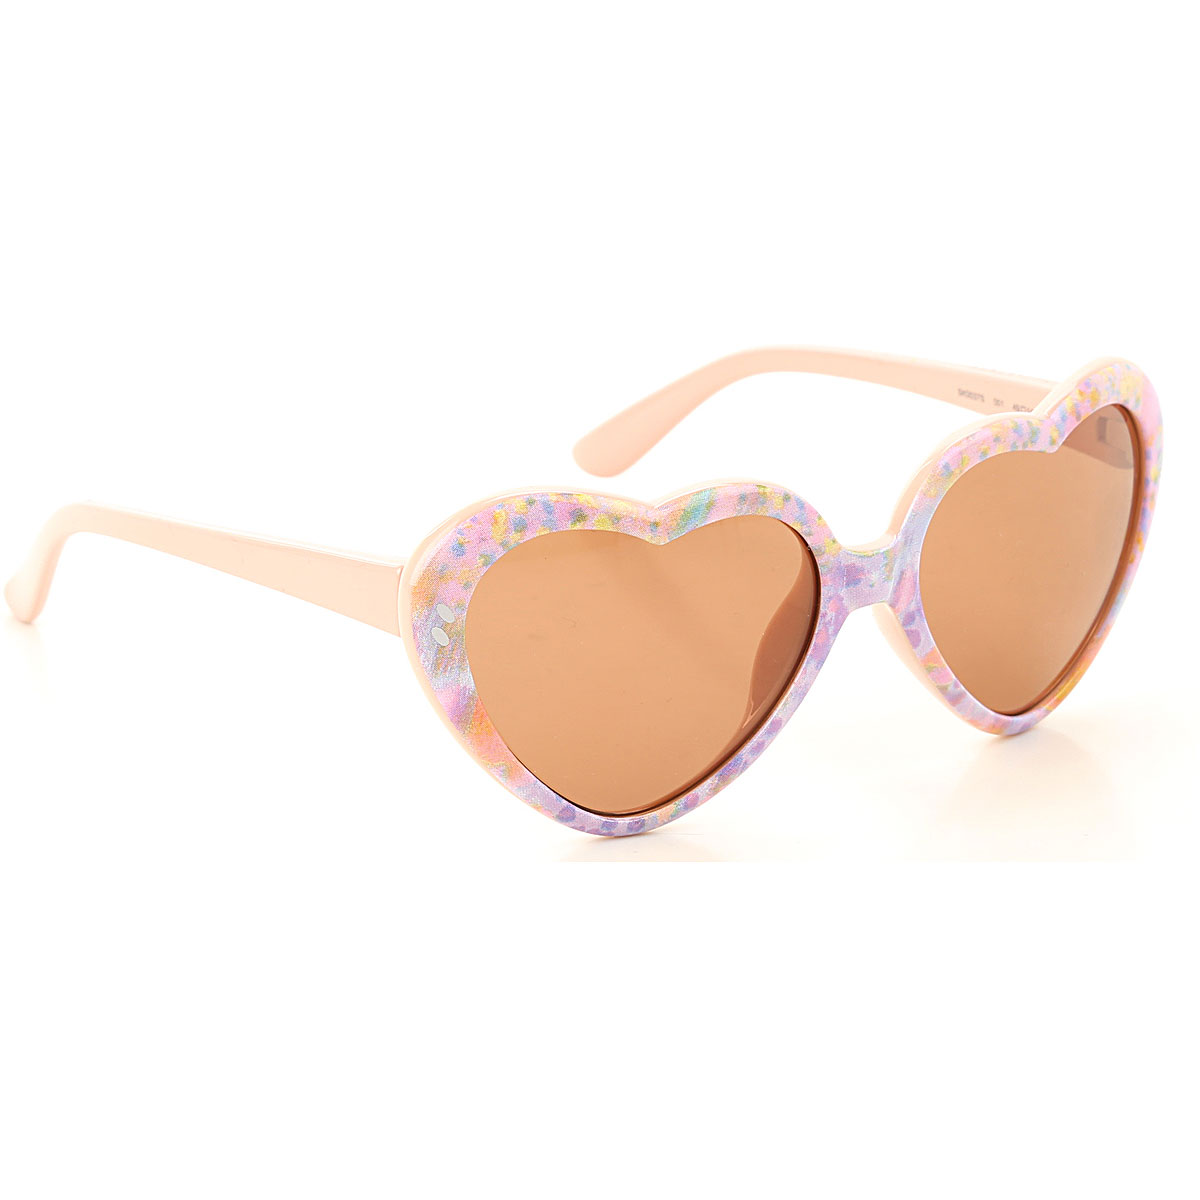 Stella McCartney Kinder Sonnenbrille für Mädchen Günstig im Sale, Rosenfarben, 2017